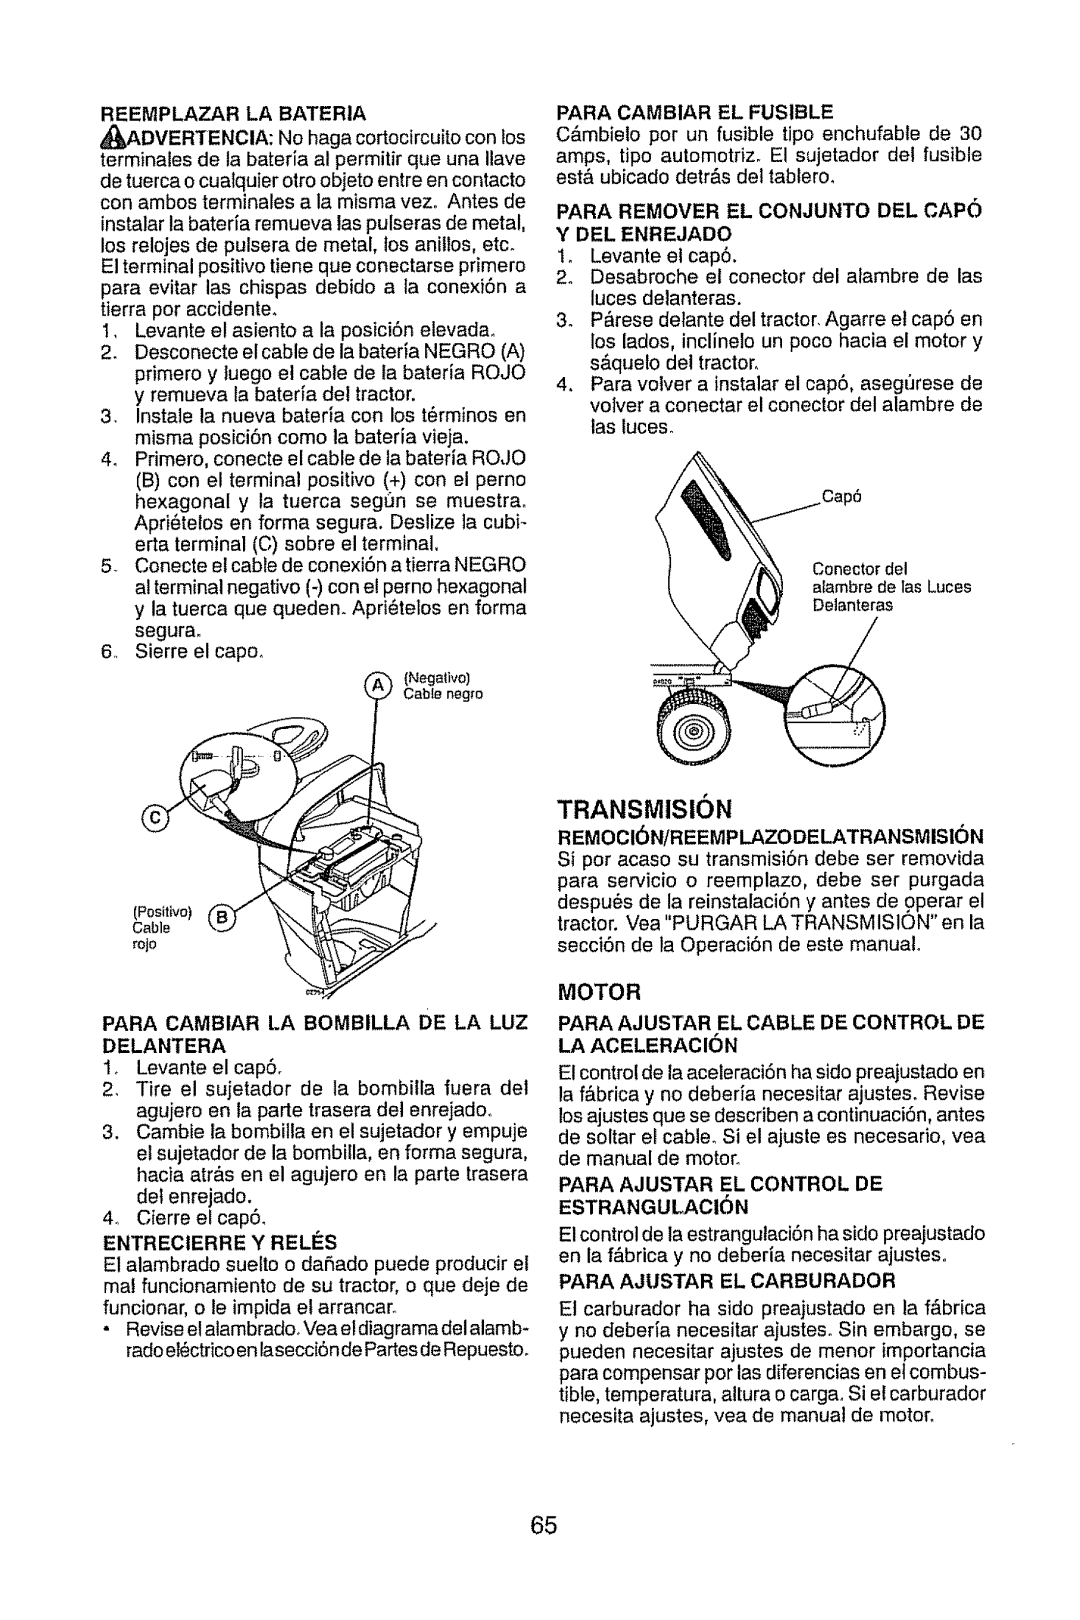 Craftsman 917.28947 manual TRANSMISlON, Reemplazar La Bateria, Para Remover El Conjunto Del Capo Y Del Enrejado, Motor 